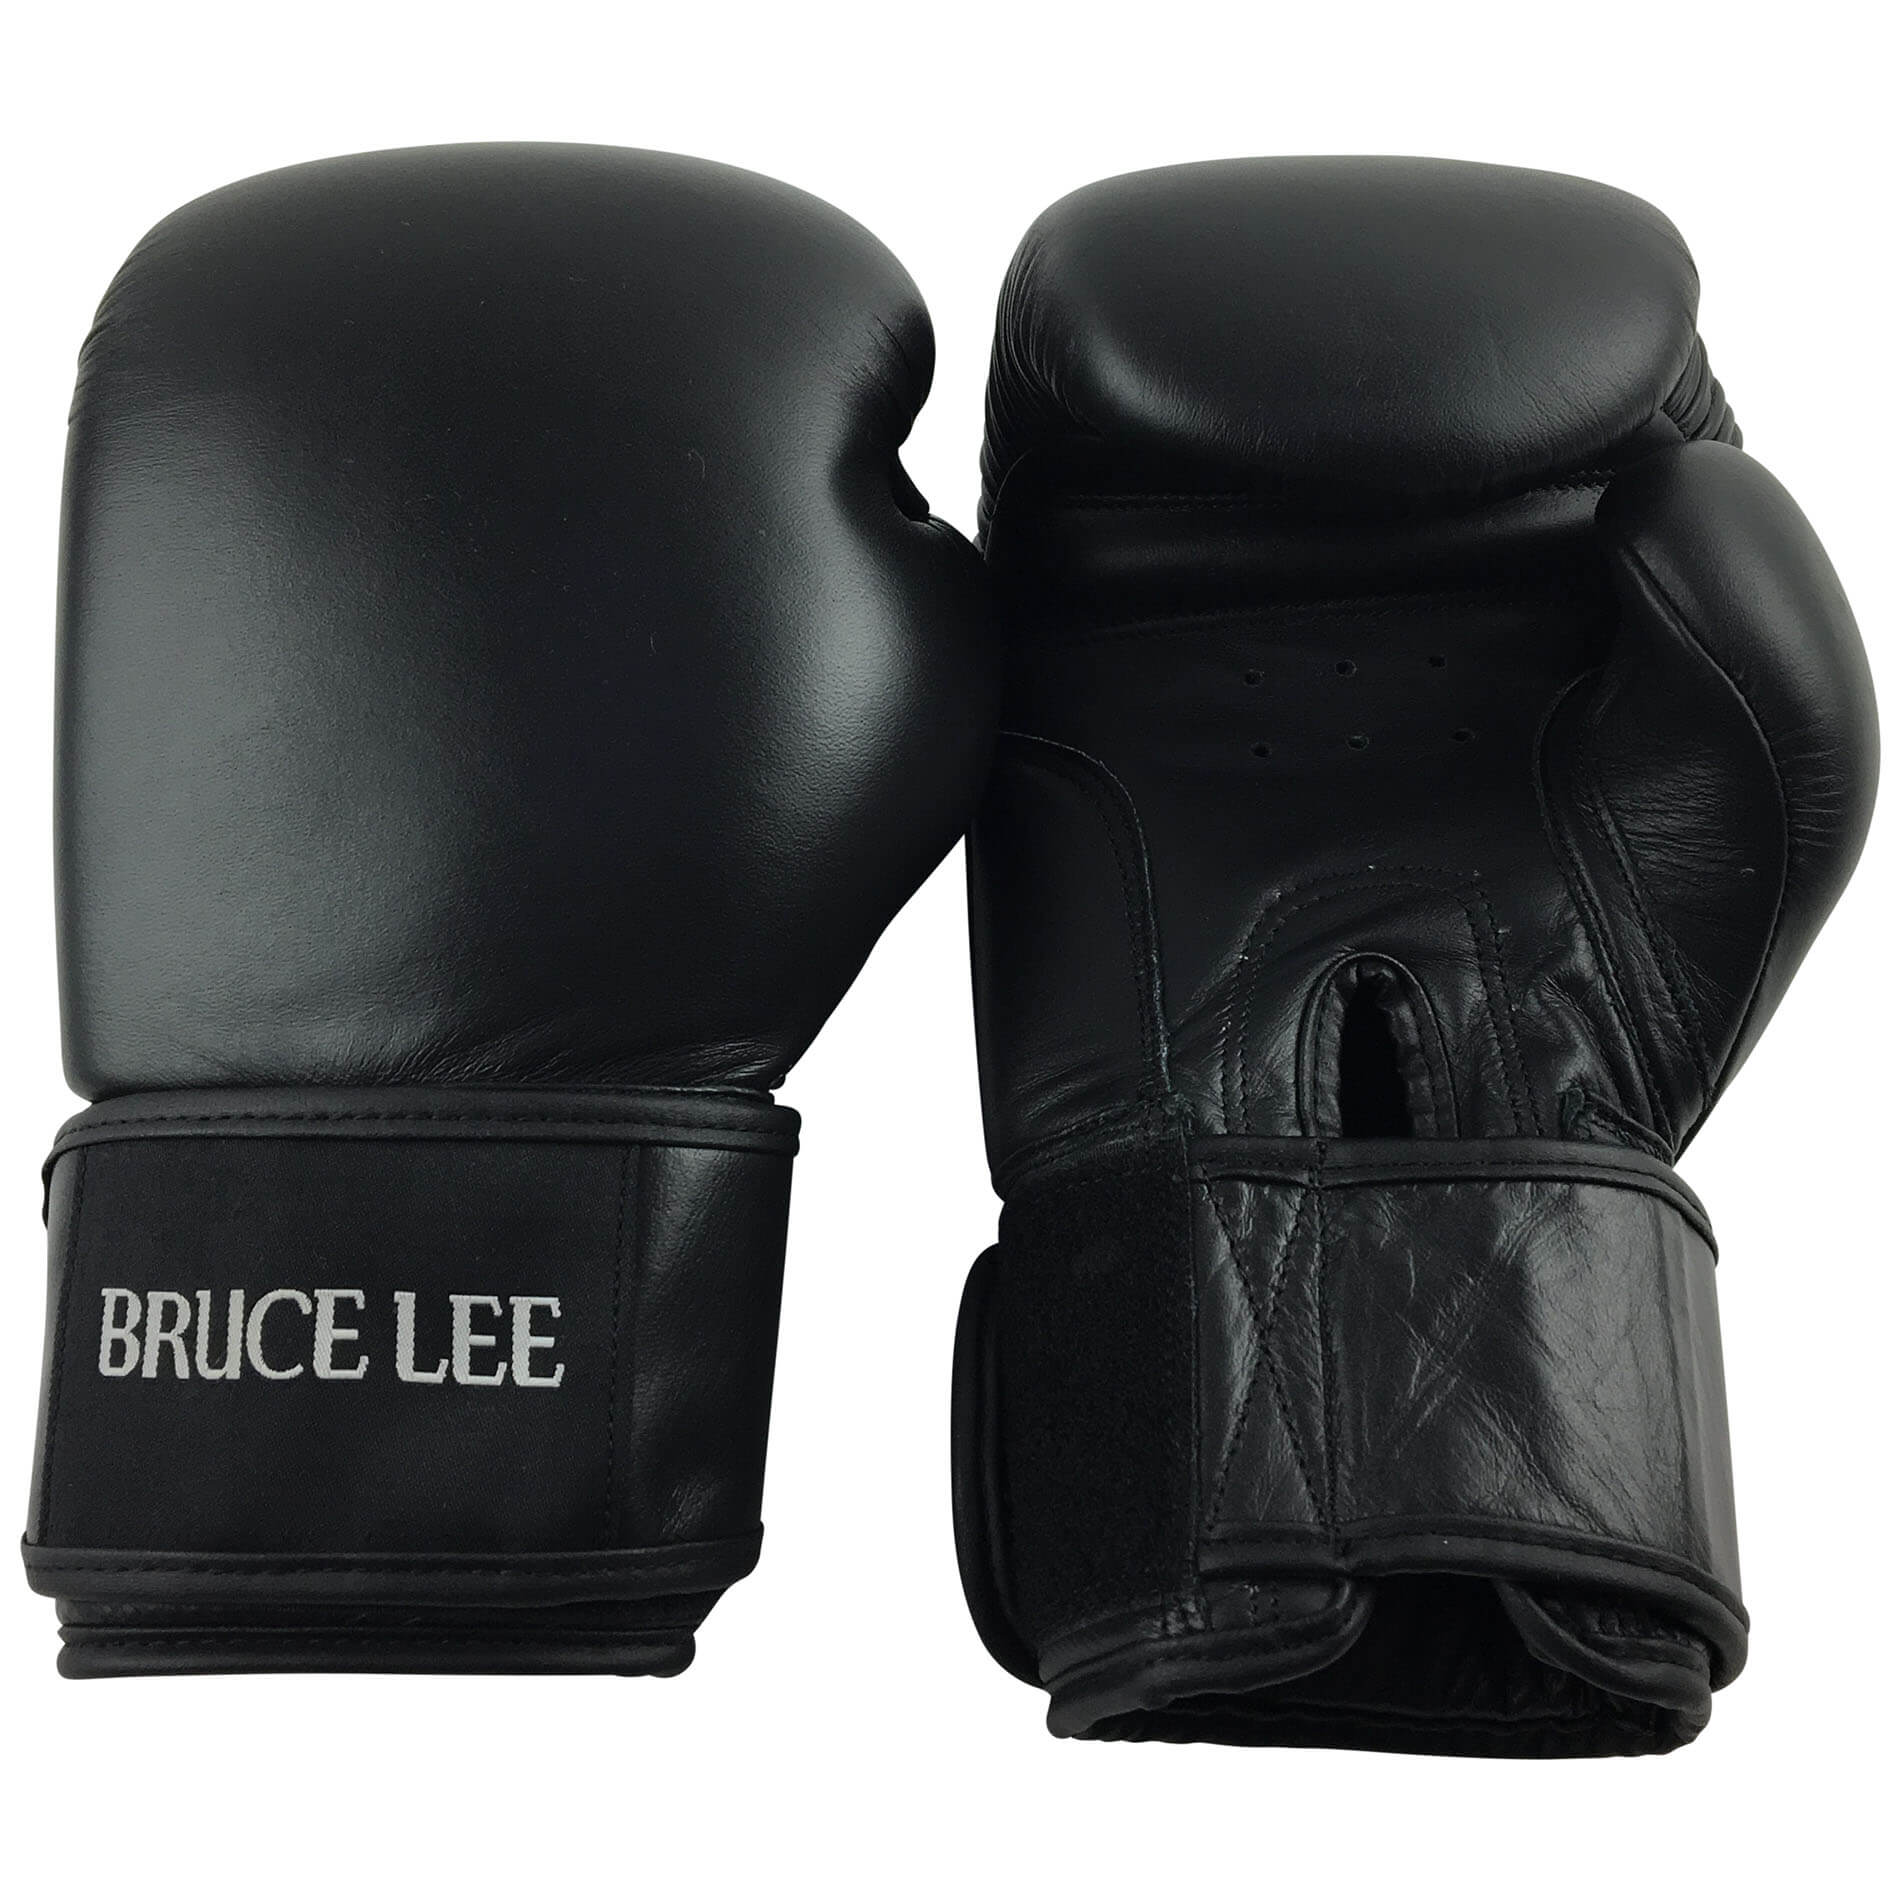 Boxerské rukavice BRUCE LEE Allround PRO vel. 12 oz